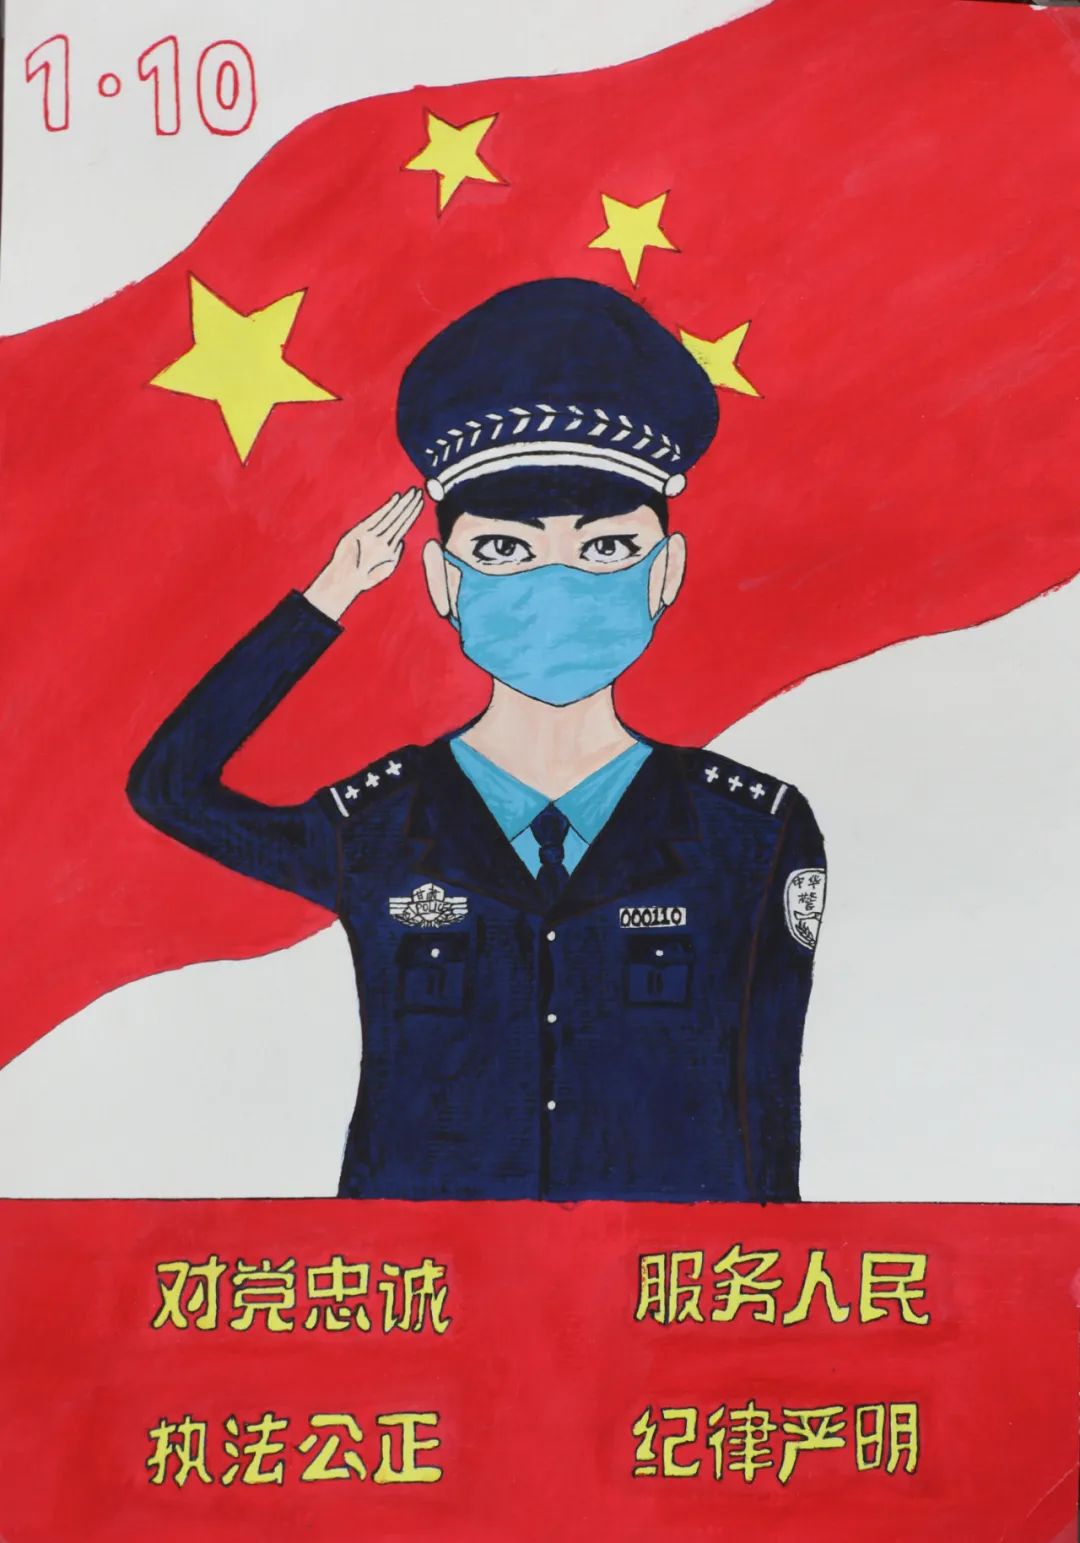 【致敬,警察节】武威公安文联庆祝首个"中国人民警察节"文艺作品展播